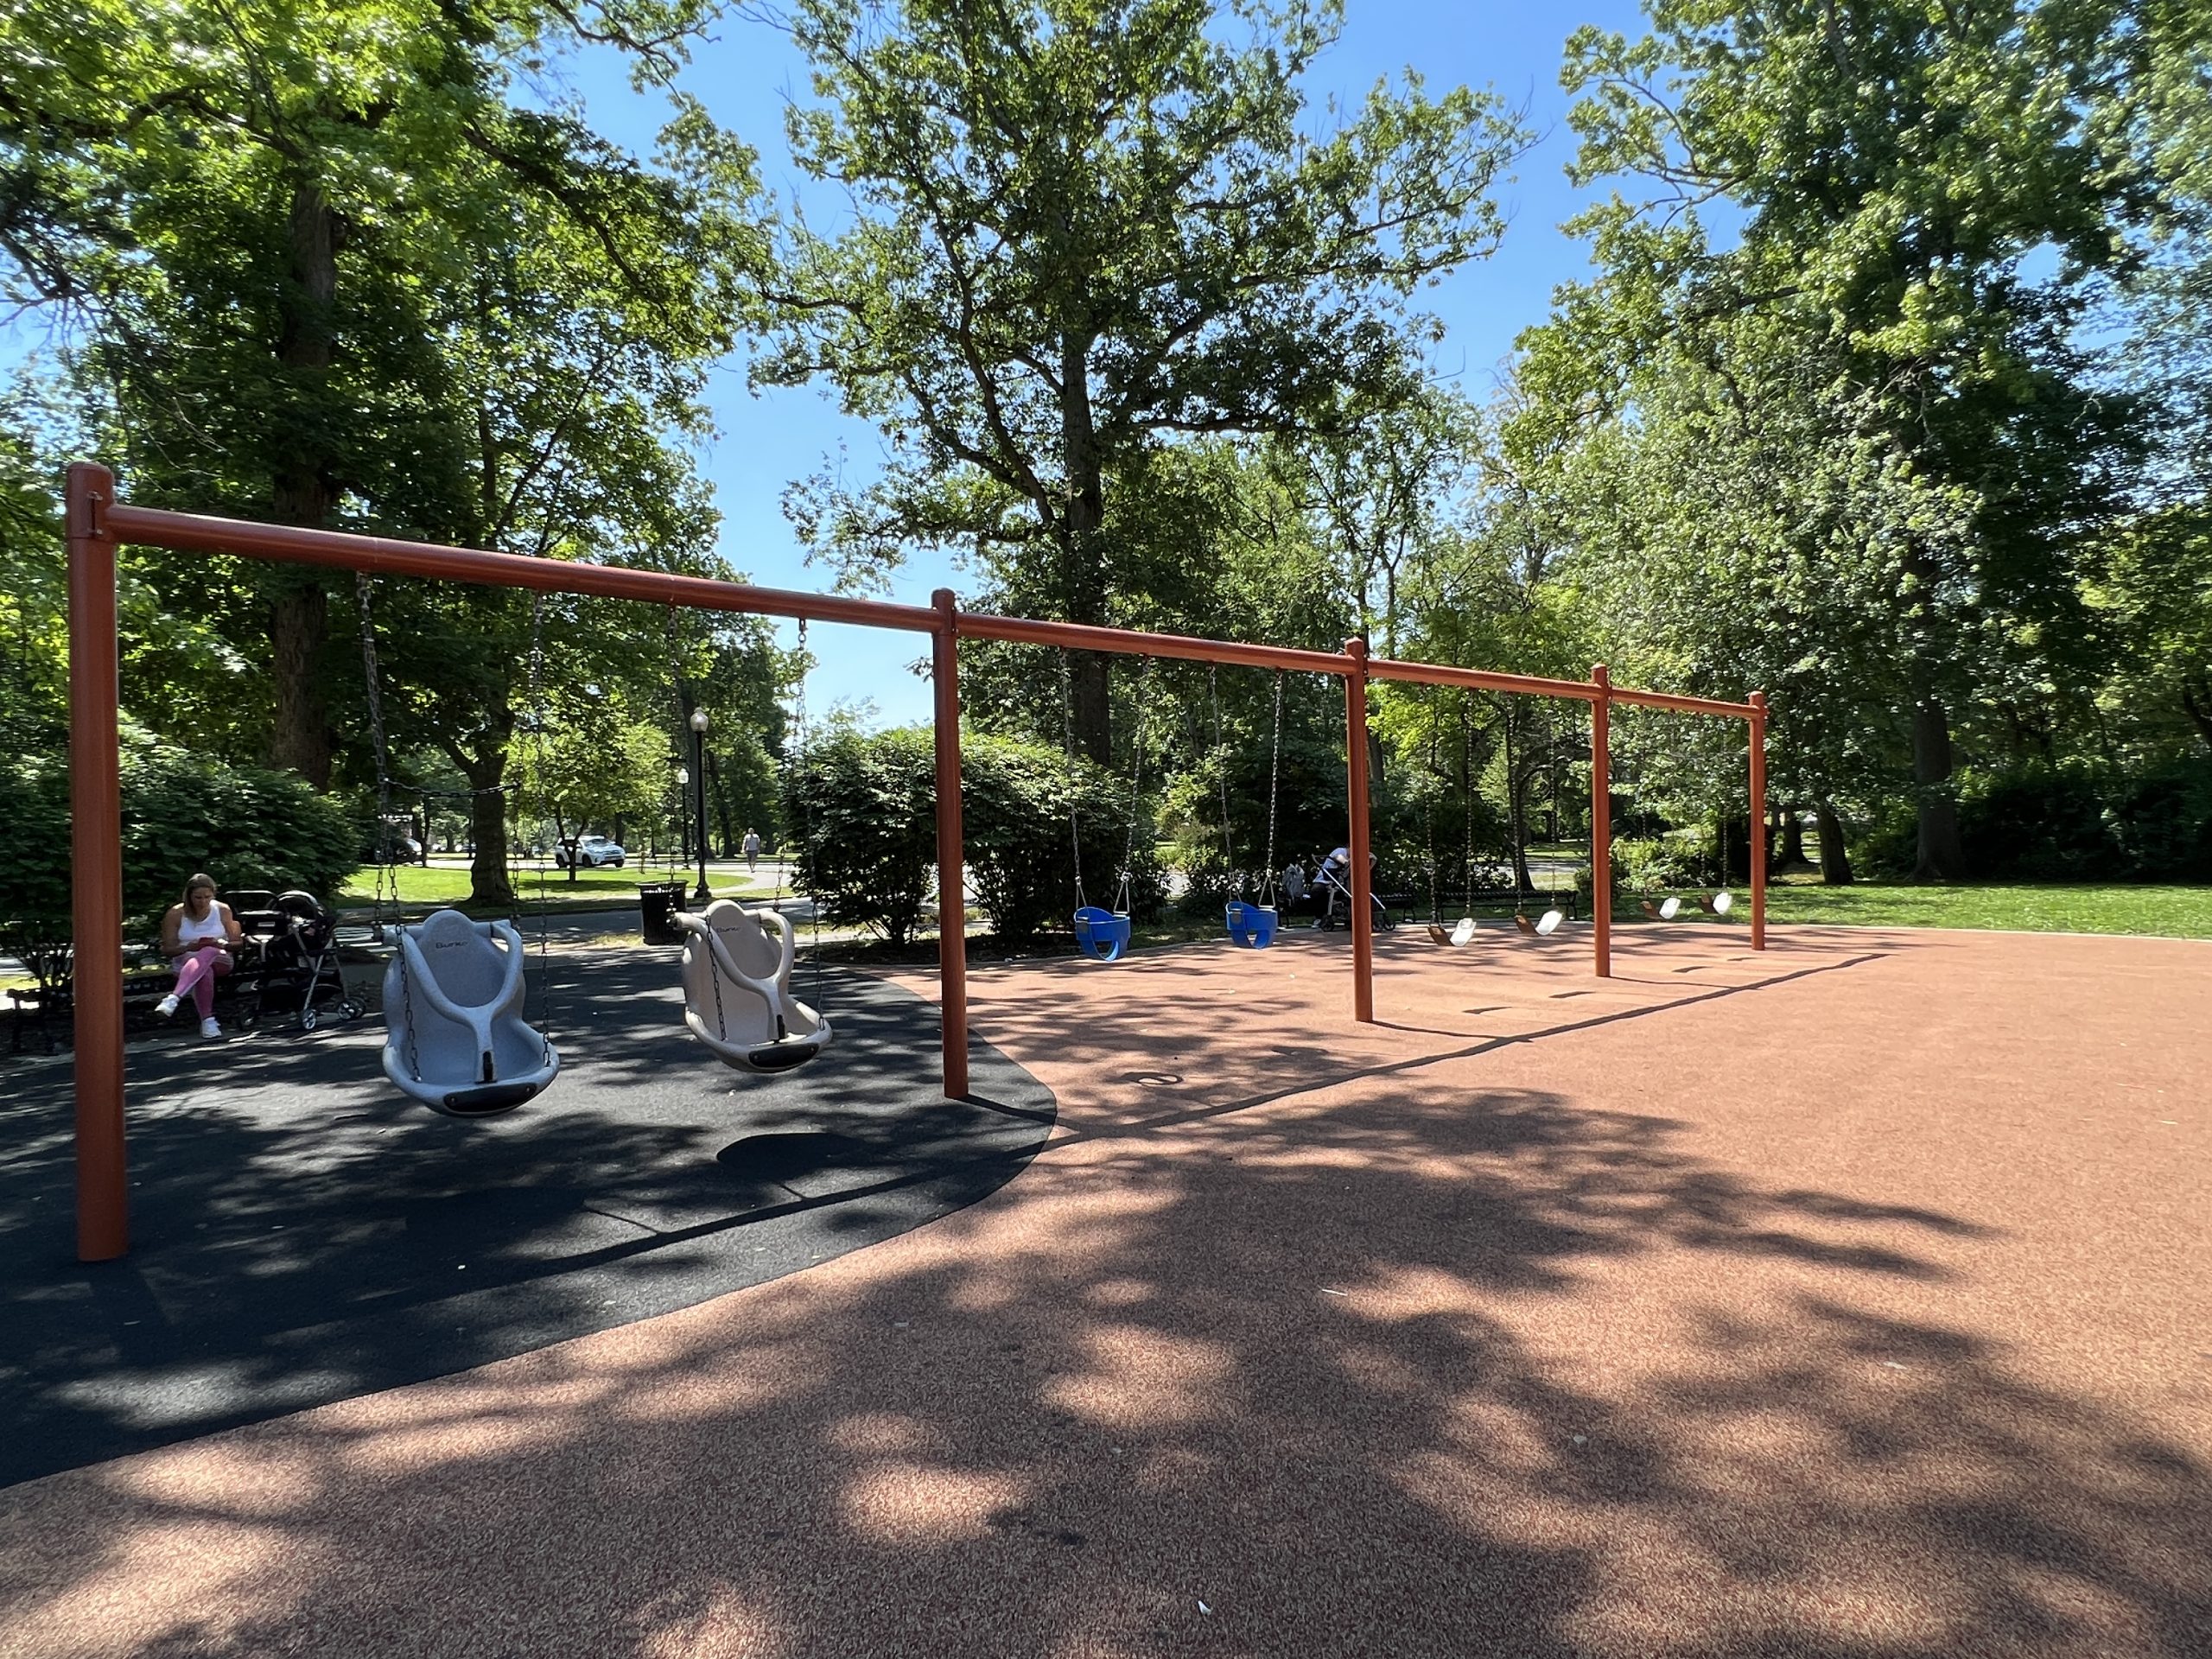 SWINGS - all swings at Mindowaskin Park Playground in Westfield NJ